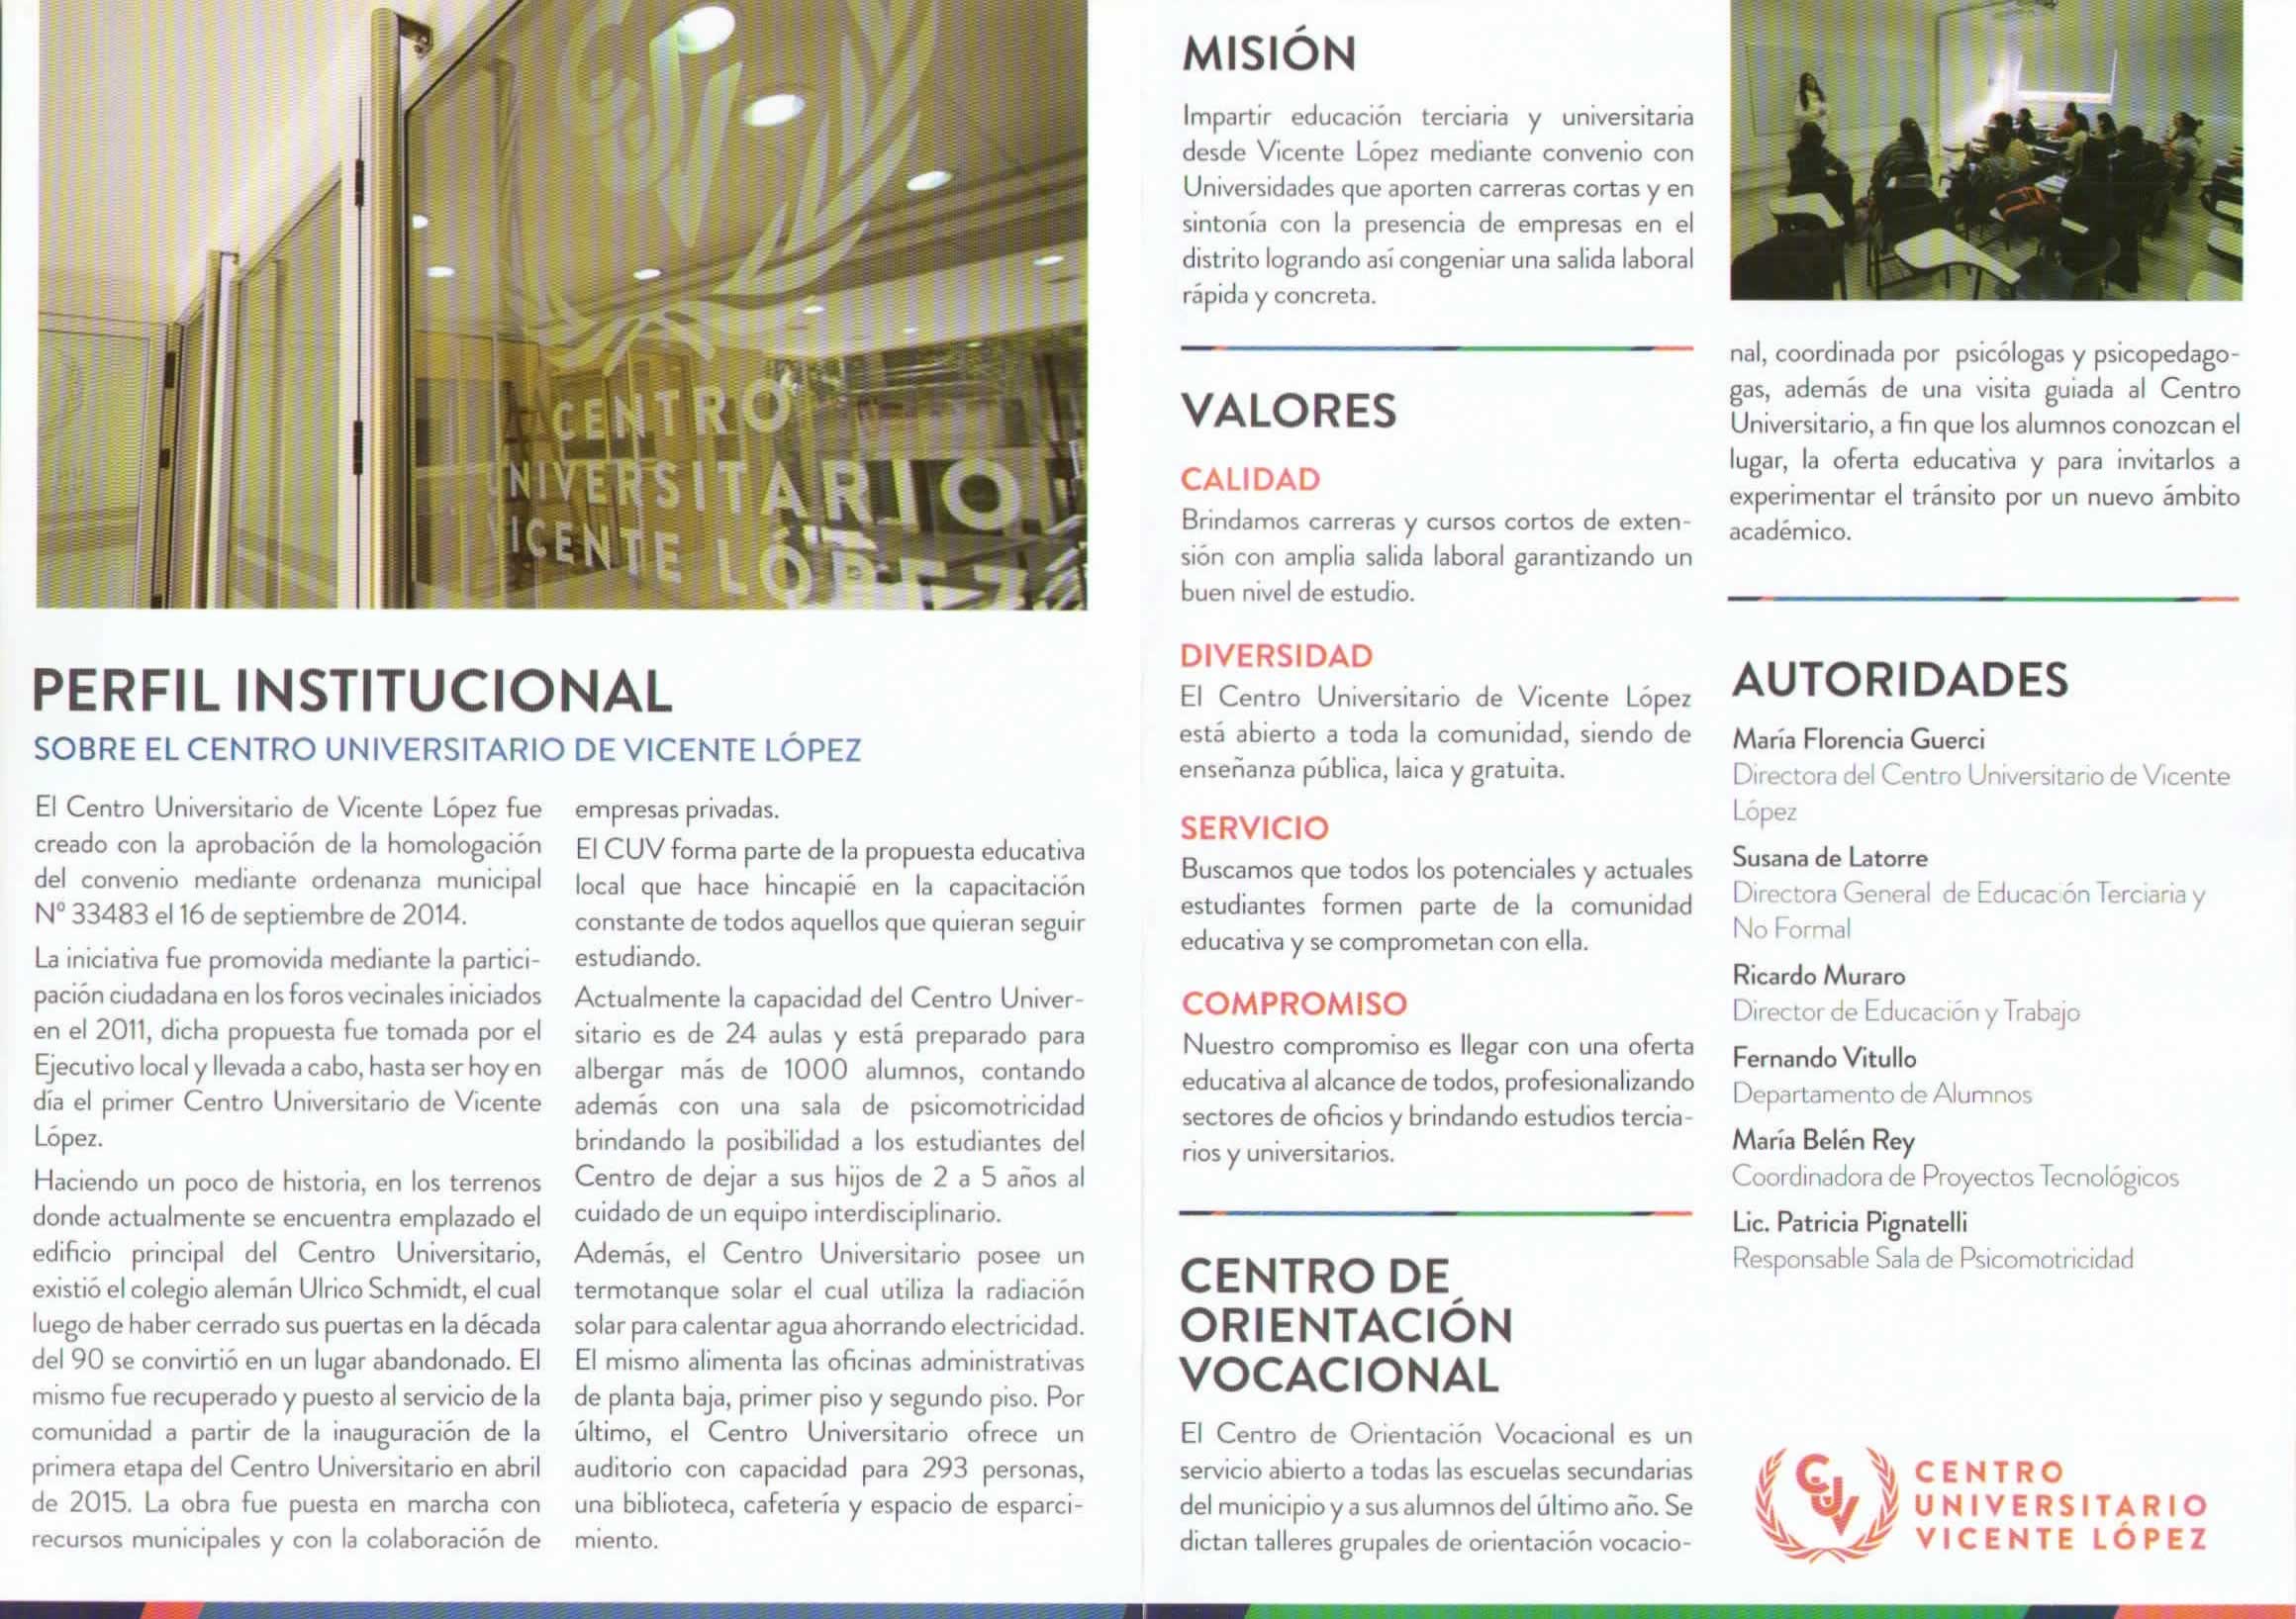 Folleto del Perfil Institucional del Centro Universitario de Vicente López, obtenido durante la #rutansqe en la 4ta. Expo Universidad de Vicente López.